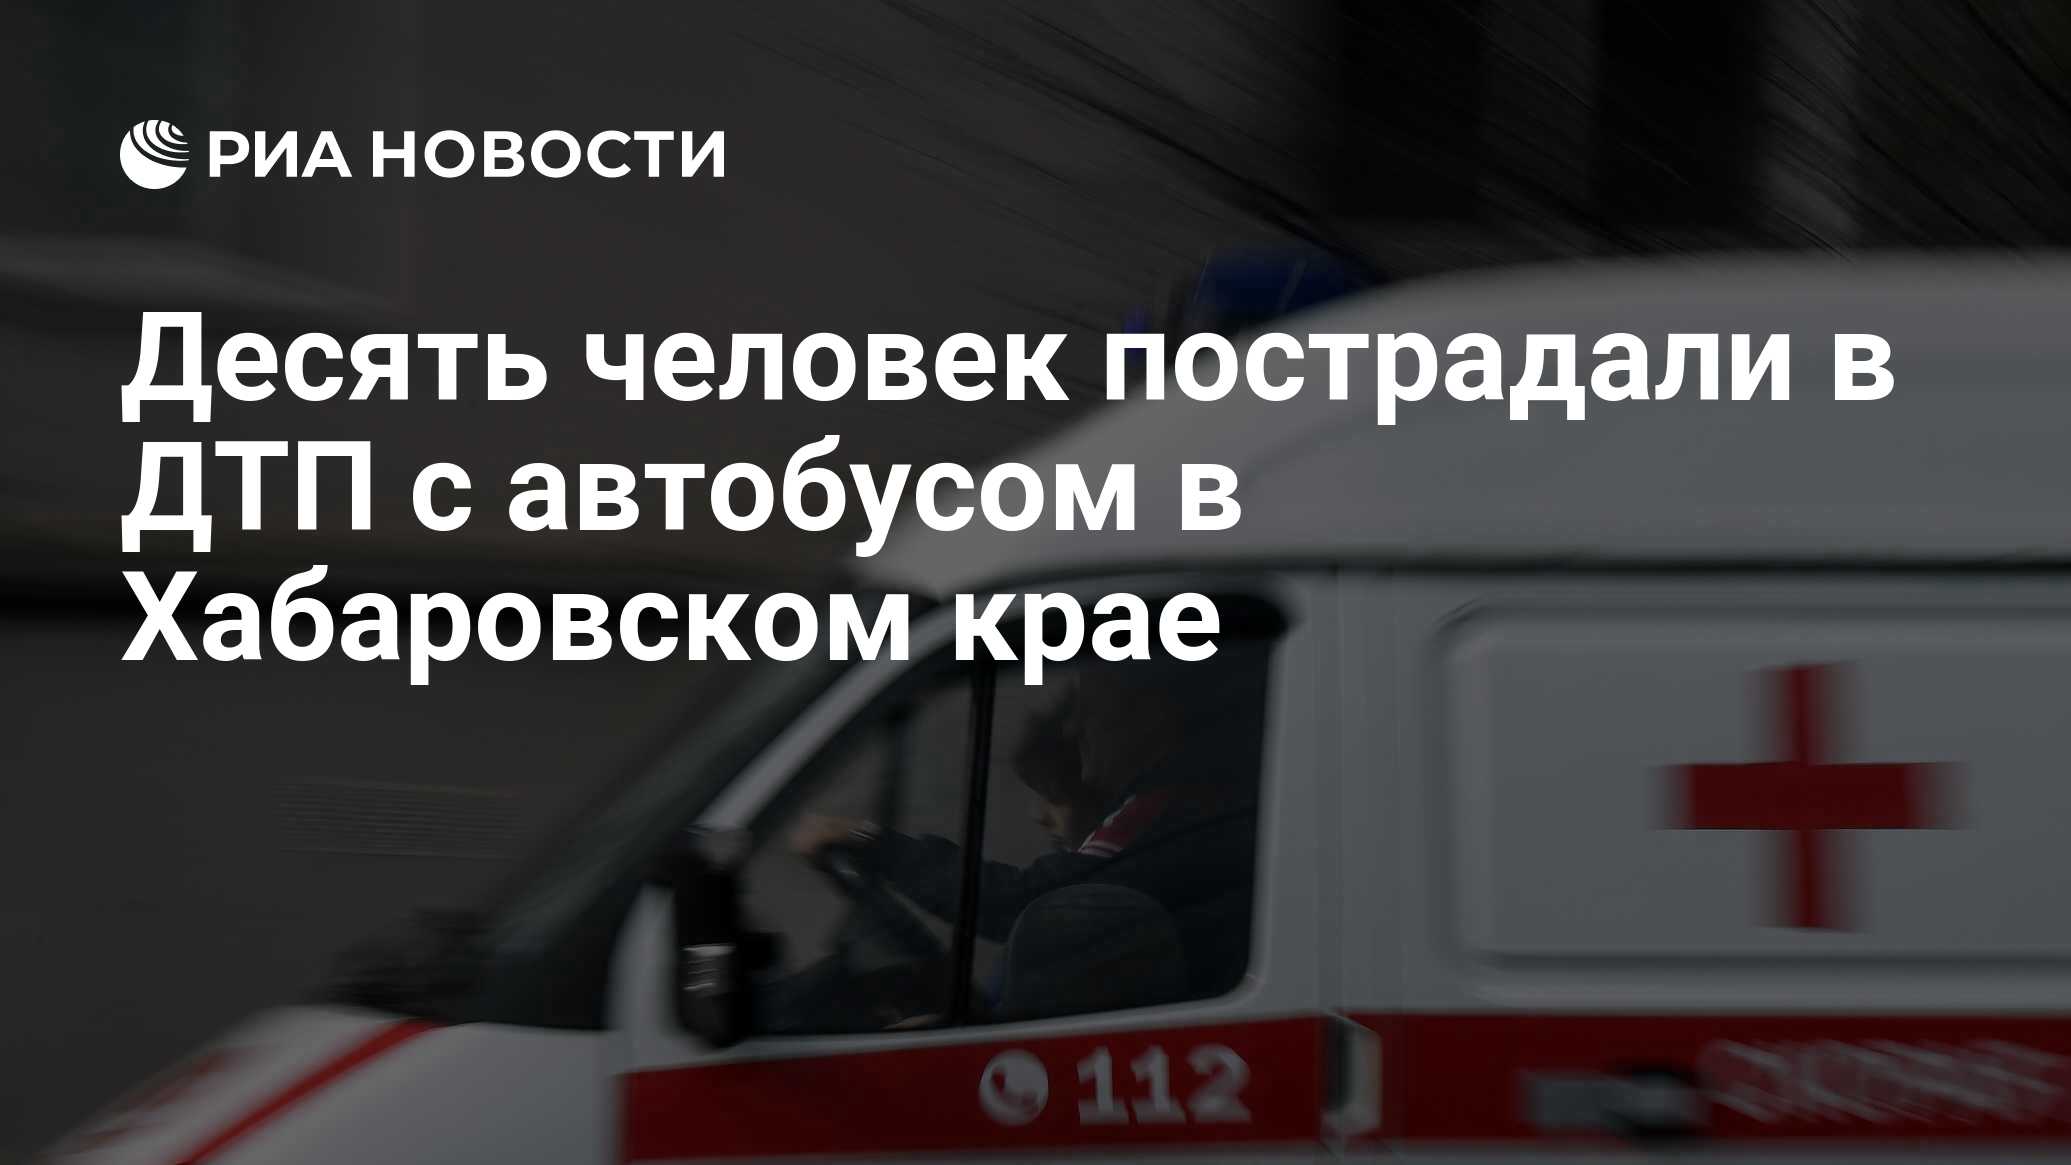 Десять человек пострадали в ДТП с автобусом в Хабаровском крае